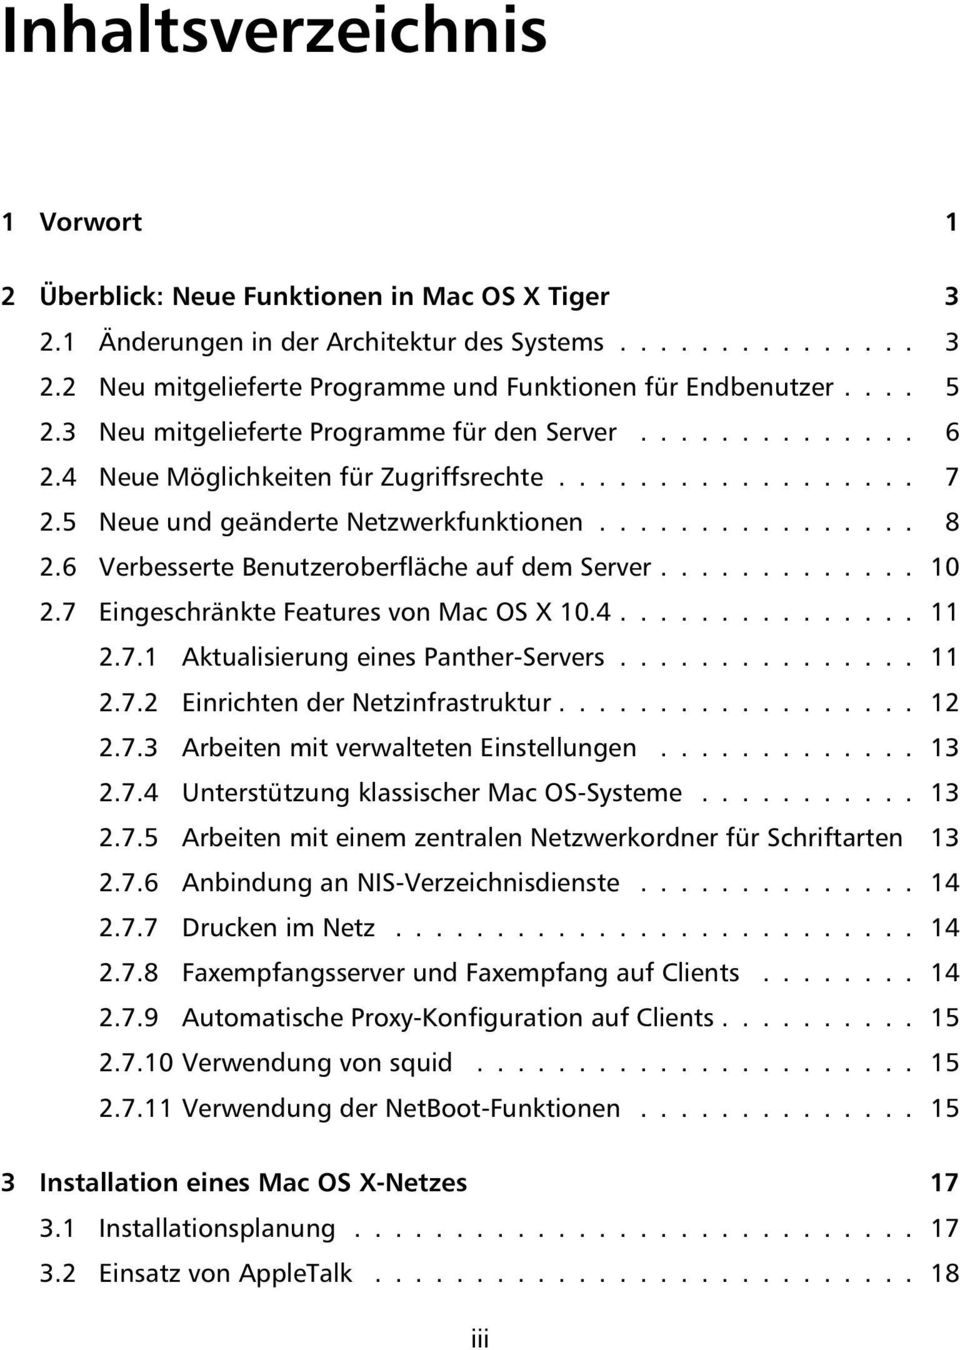 6 Verbesserte Benutzeroberfläche auf dem Server............. 10 2.7 Eingeschränkte Features von Mac OS X 10.4............... 11 2.7.1 Aktualisierung eines Panther-Servers............... 11 2.7.2 Einrichten der Netzinfrastruktur.